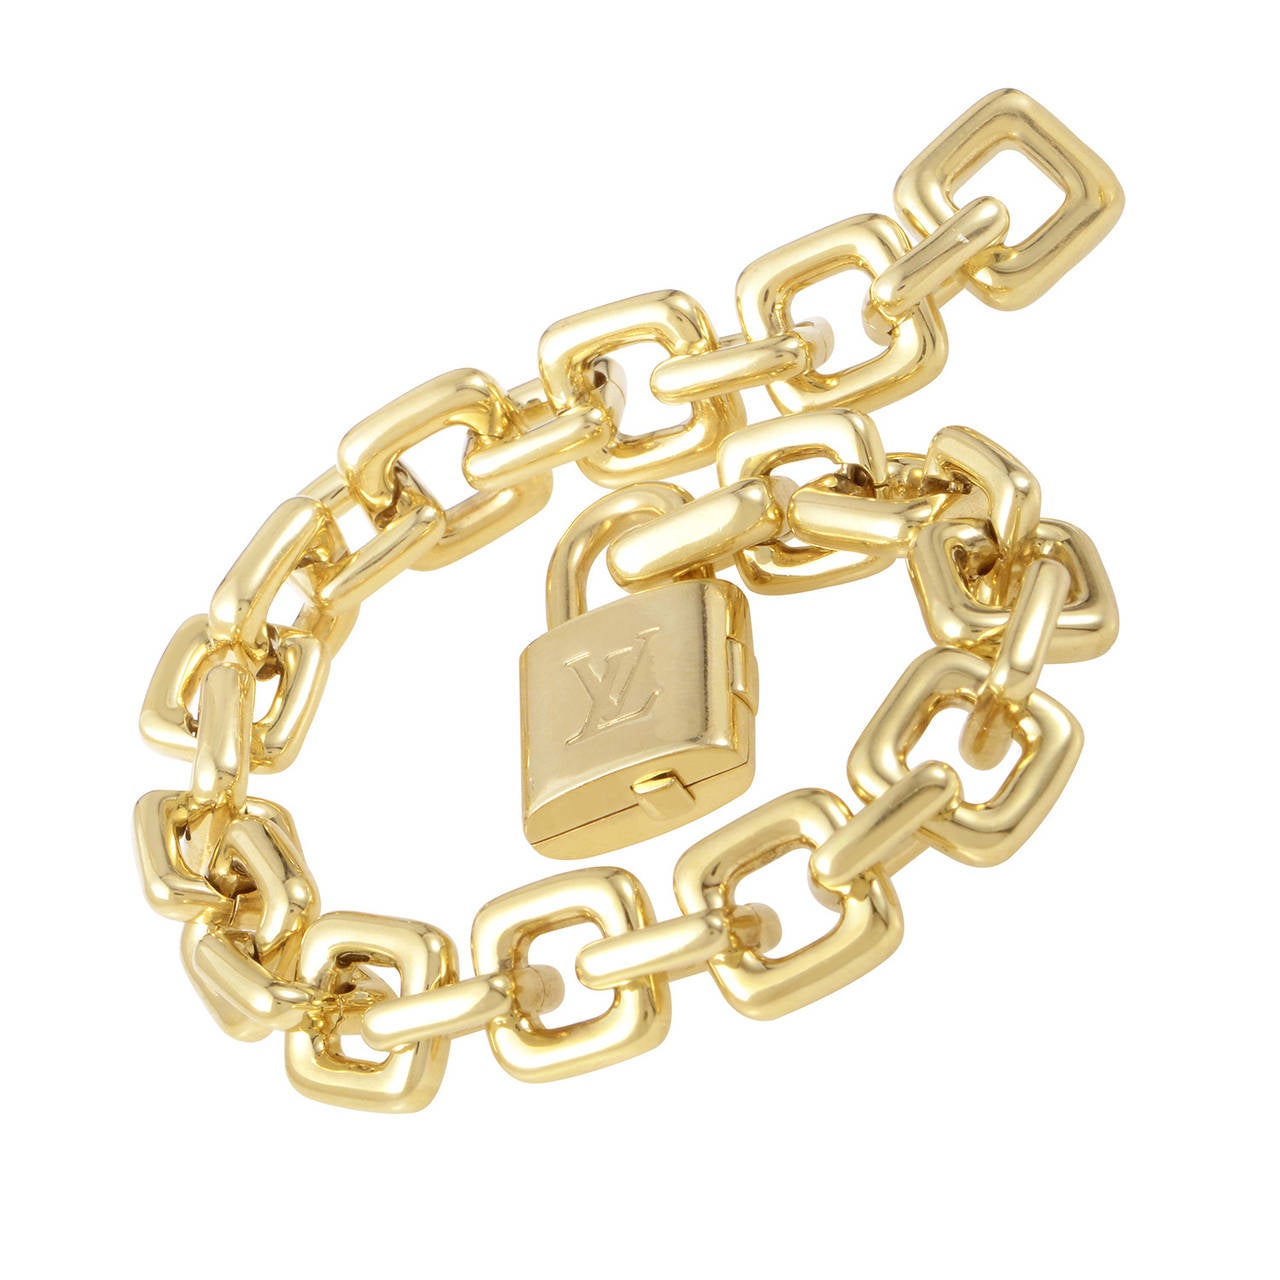 Louis Vuitton Yellow Gold Lock Link Bracelet at 1stdibs